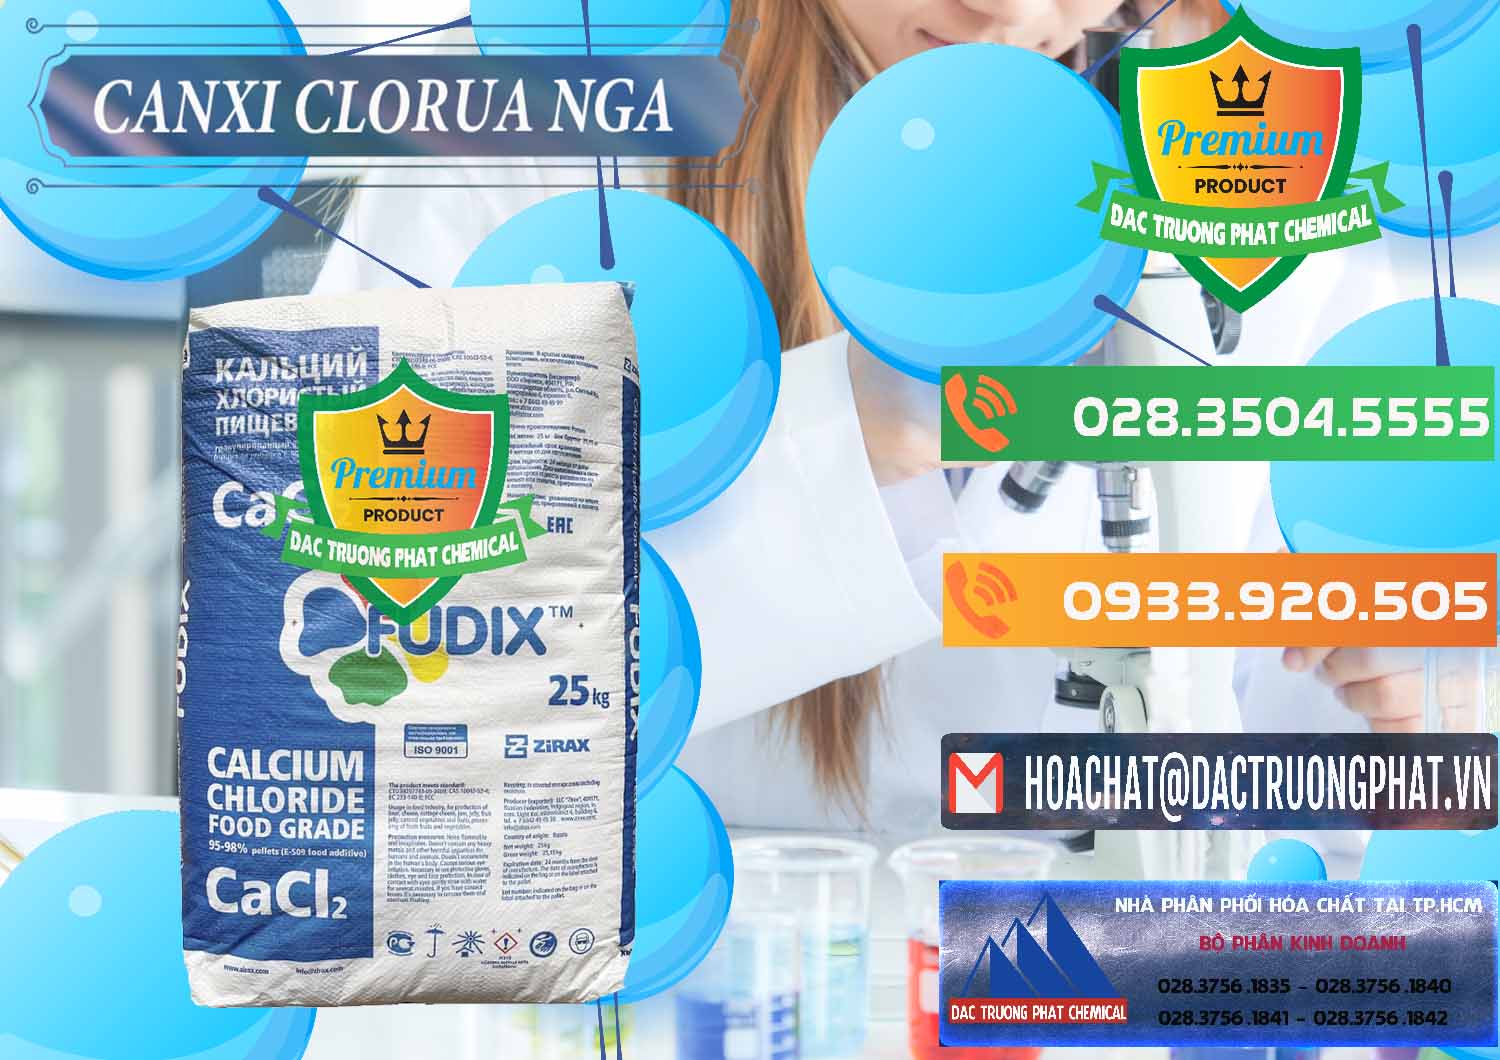 Cty nhập khẩu và bán CaCl2 – Canxi Clorua Nga Russia - 0430 - Nơi chuyên bán _ phân phối hóa chất tại TP.HCM - hoachatxulynuoc.com.vn